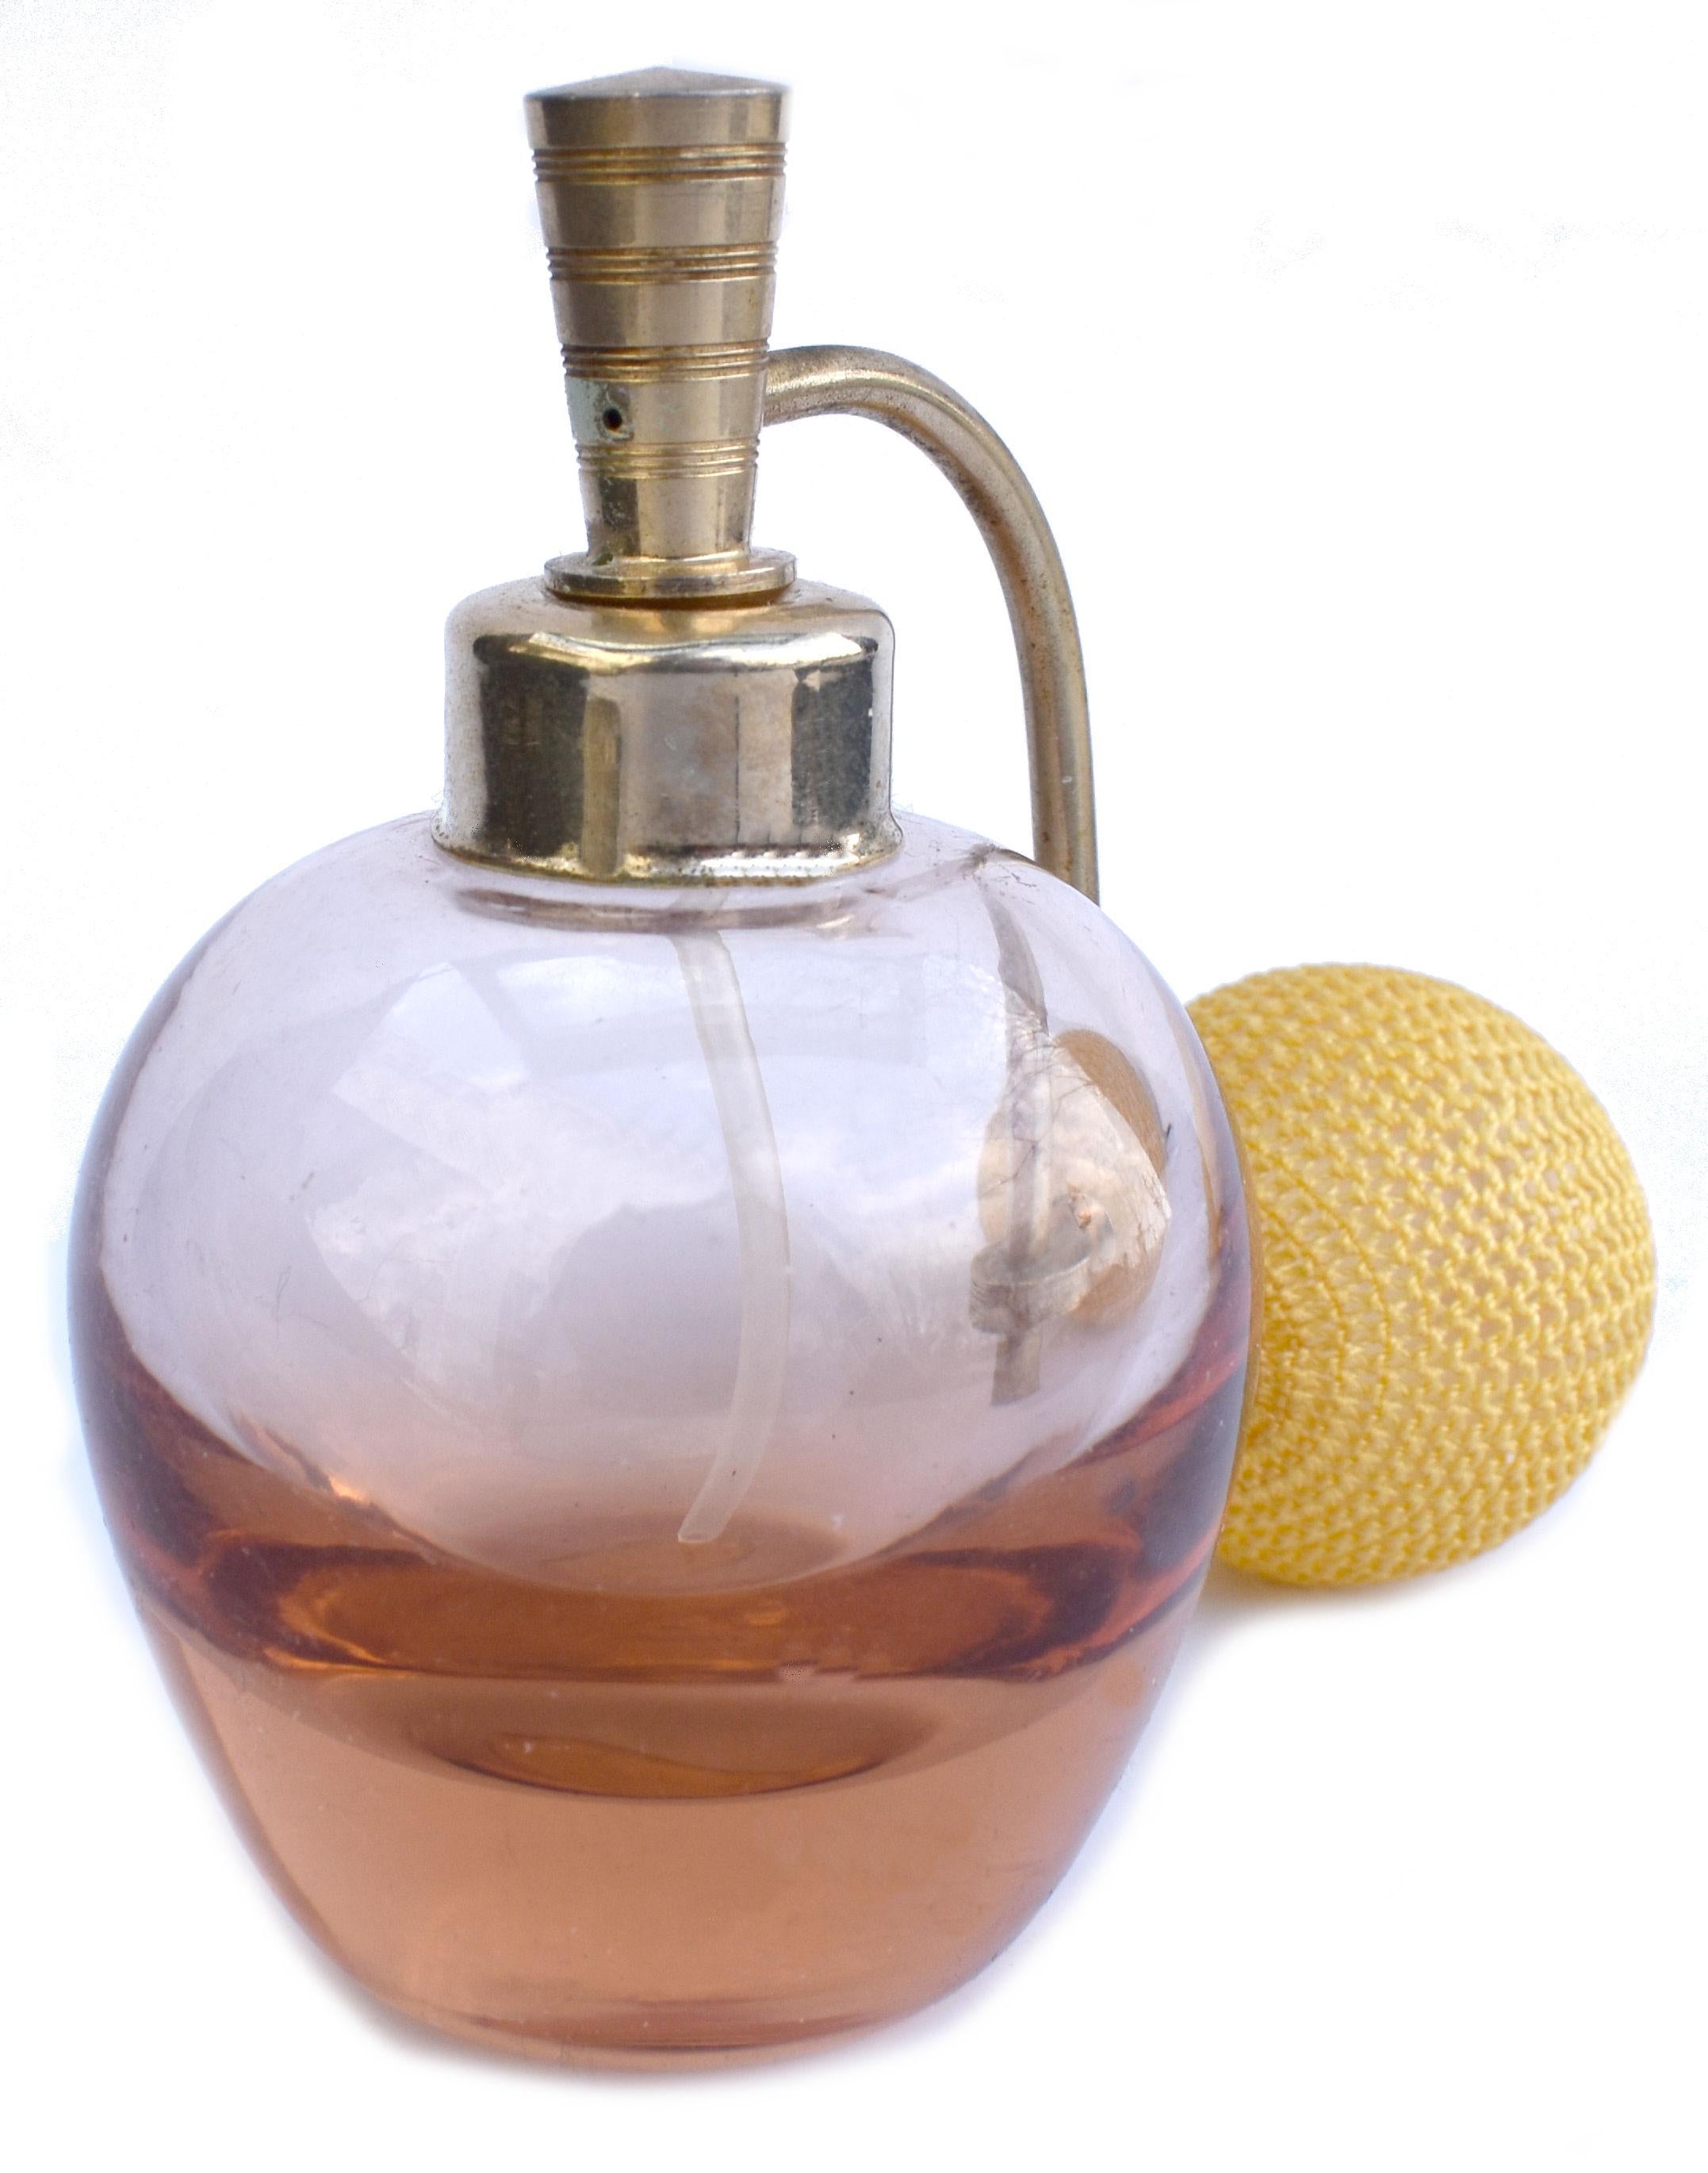 1930s perfume bottles